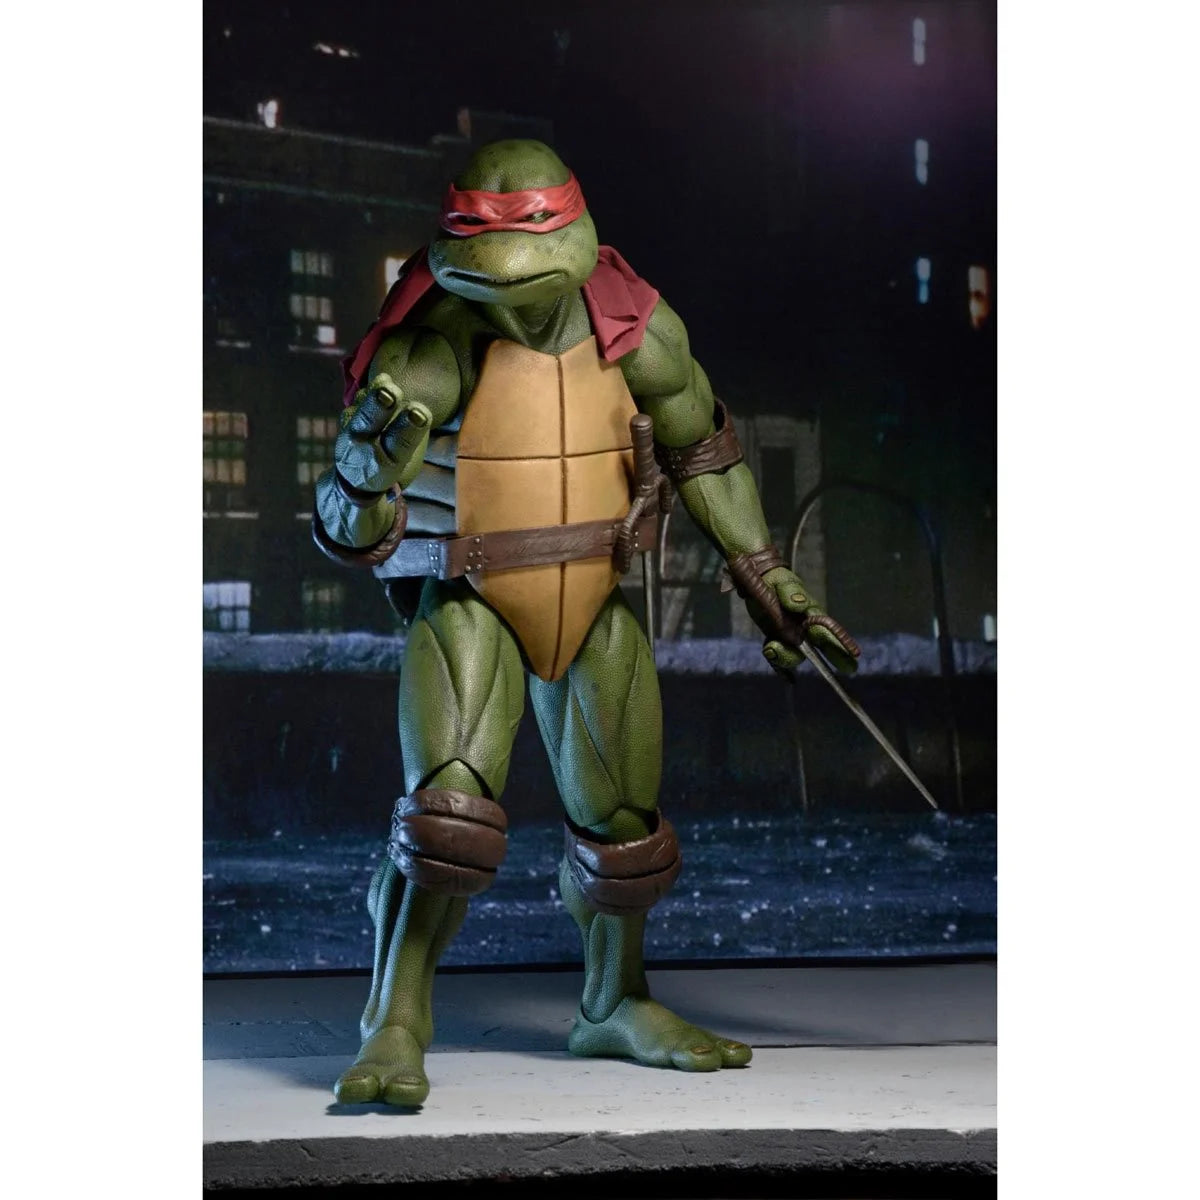 (PREVENTA) Teenage Mutant Ninja Turtles Movie 1990 Raphael 1:4 Scale Action Figure